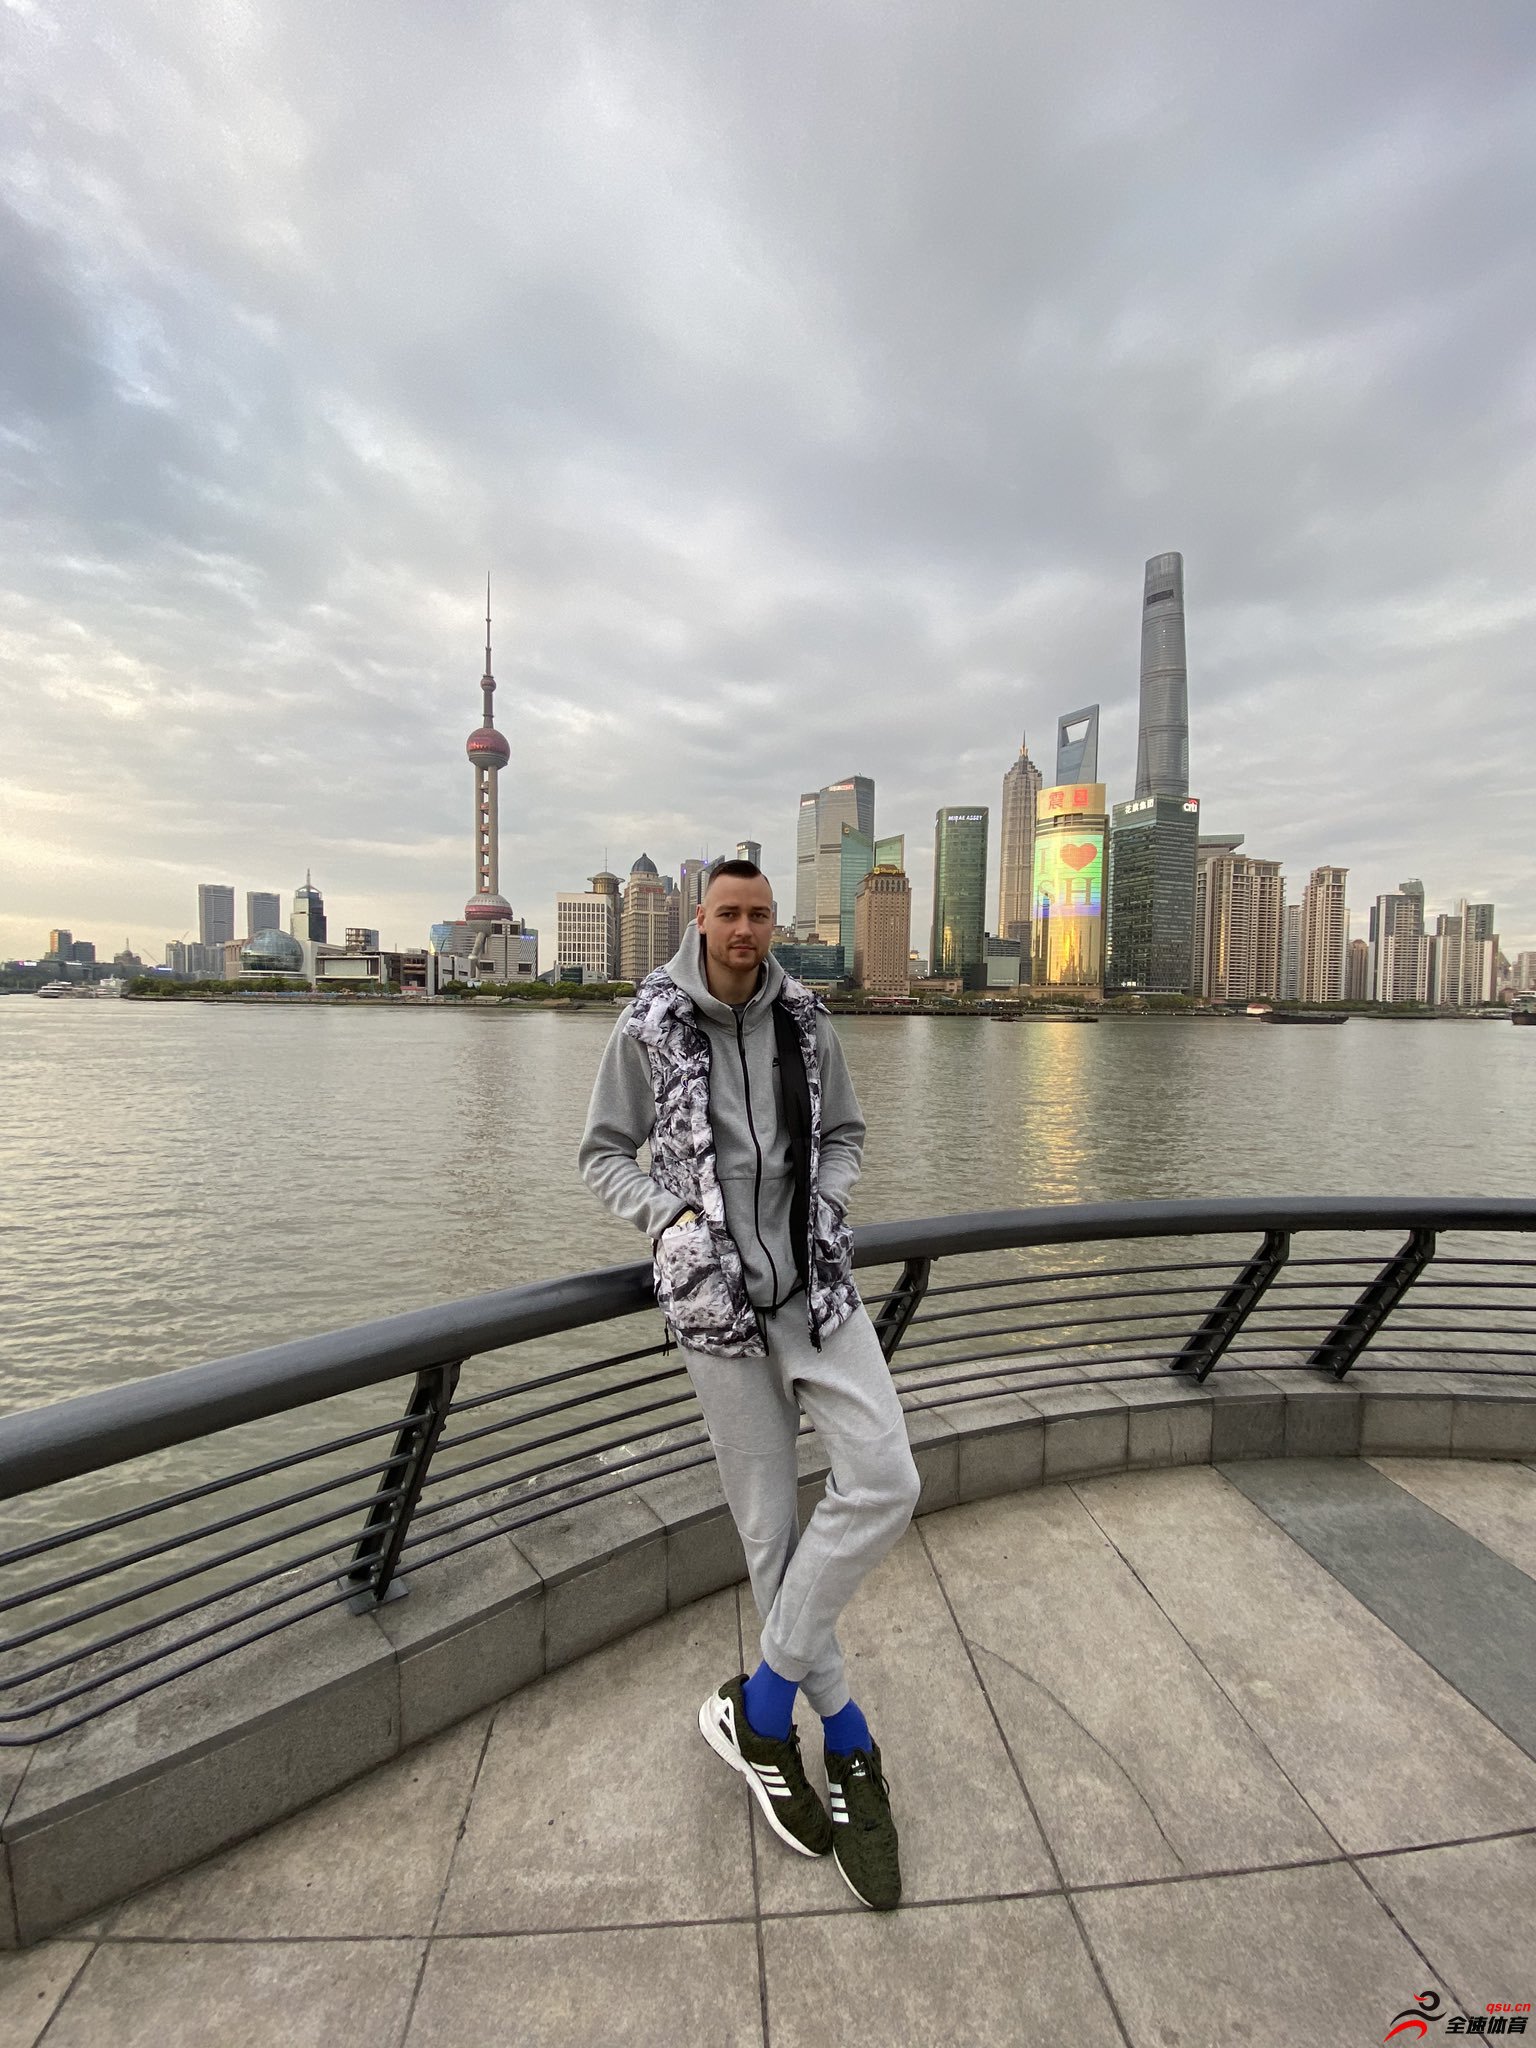 莫蒂埃尤纳斯晒出自己在上海的照片